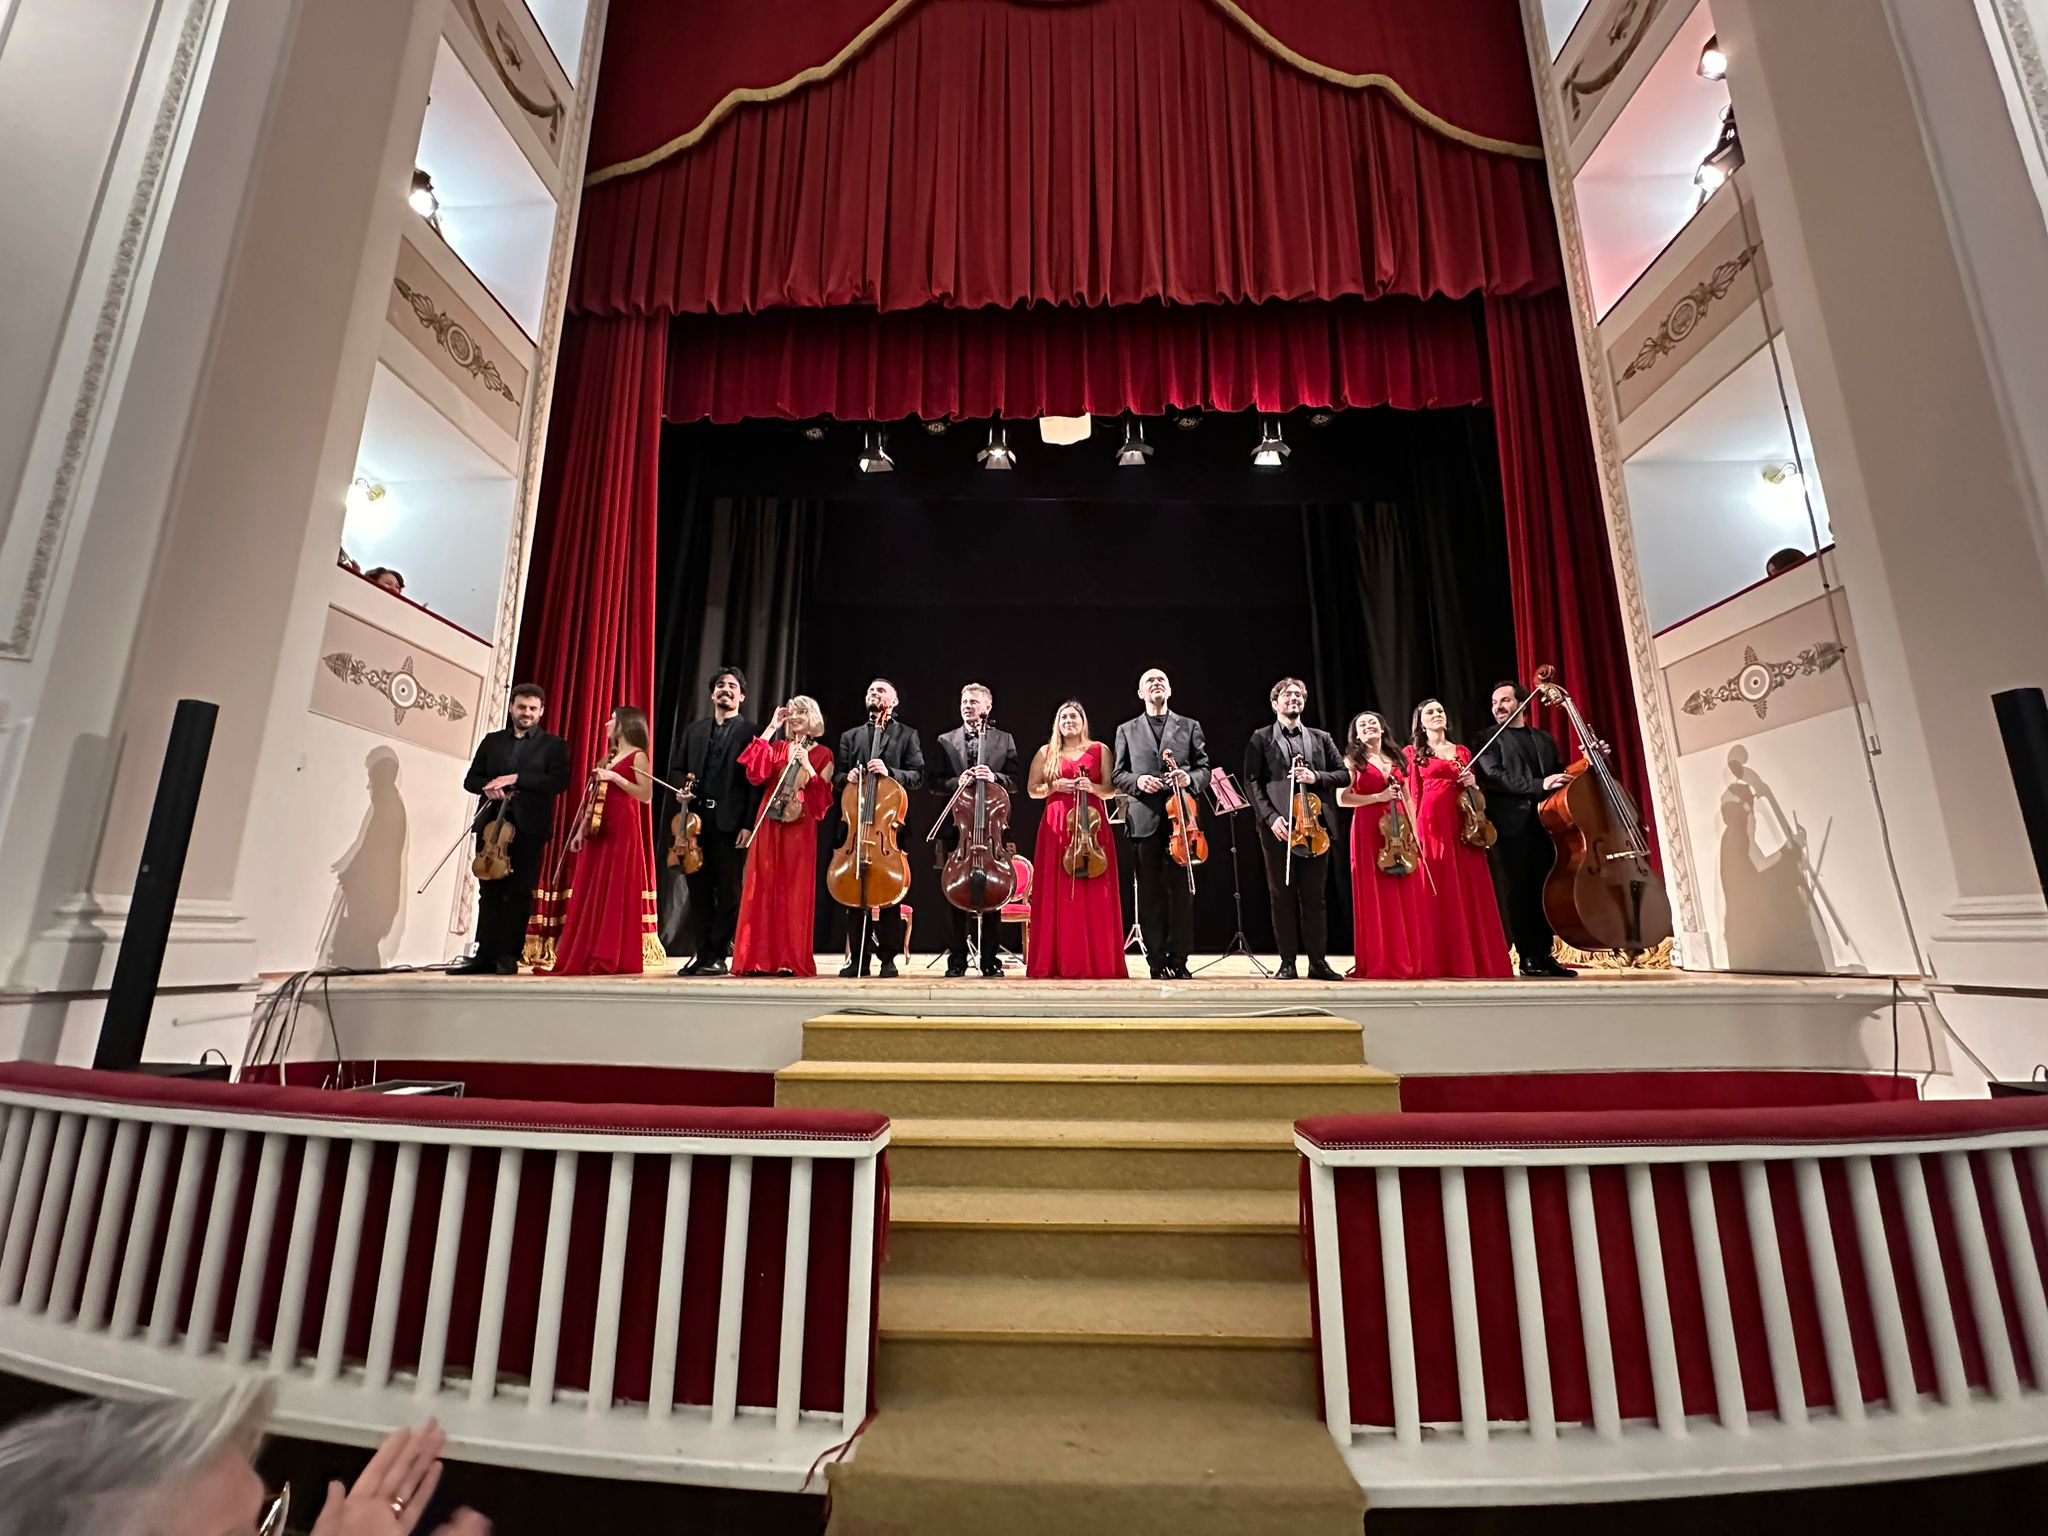 Grande successo per l’Orchestra d’Archi Accademia di Santa Sofia con “Fuochi d’artificio”